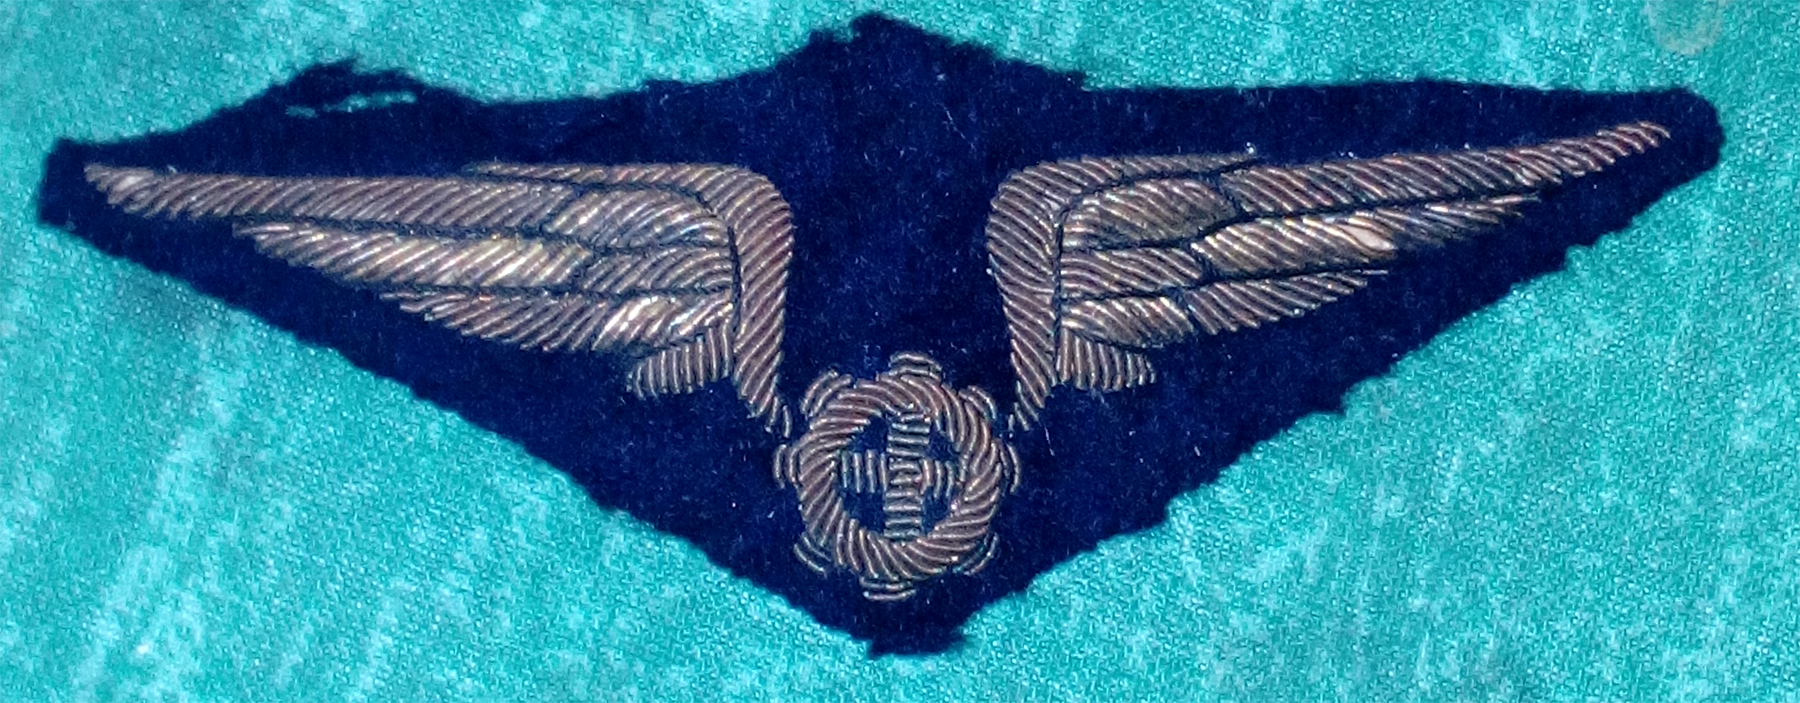 WW2 Air Cadet USAAF Army Air Force felt patch black 